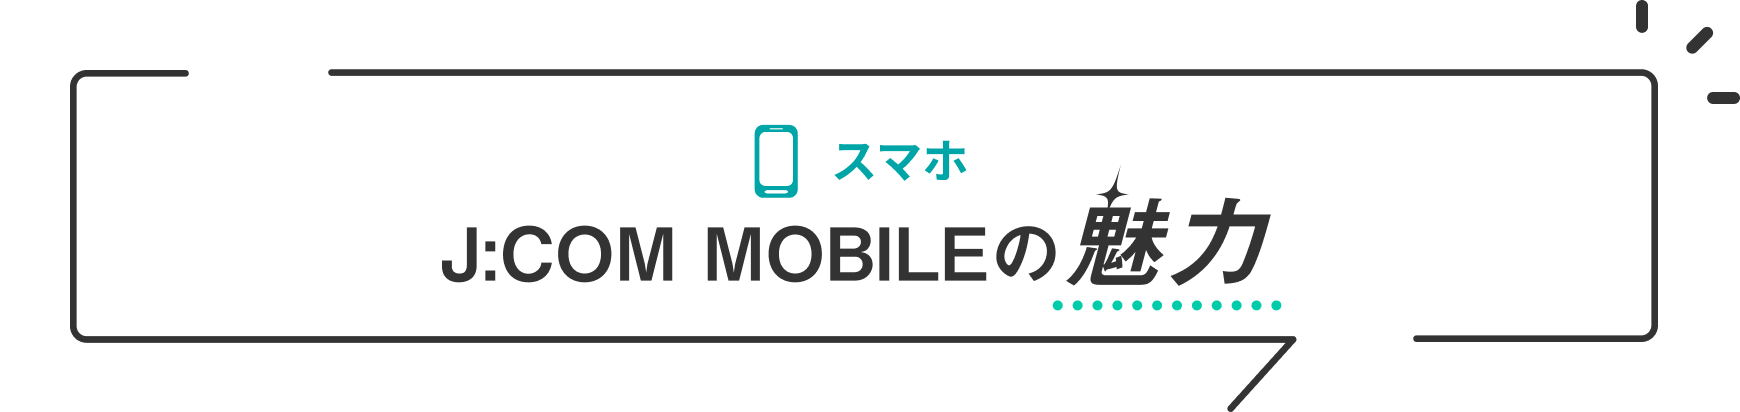 智能手机的魅力J:COM MOBILE